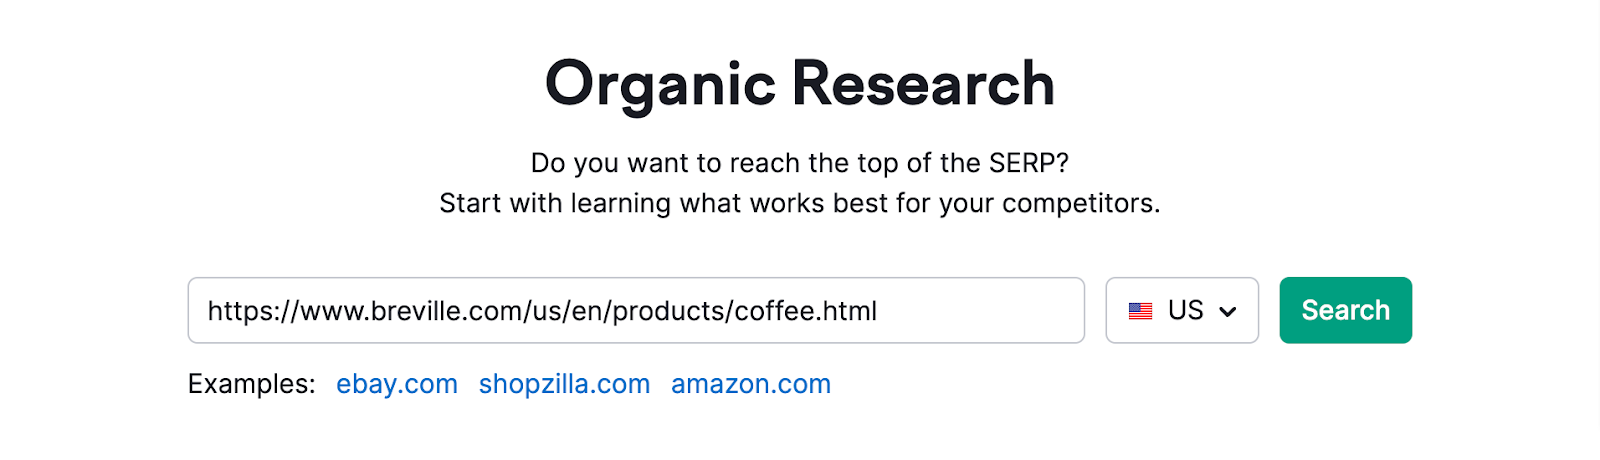 organic research tool